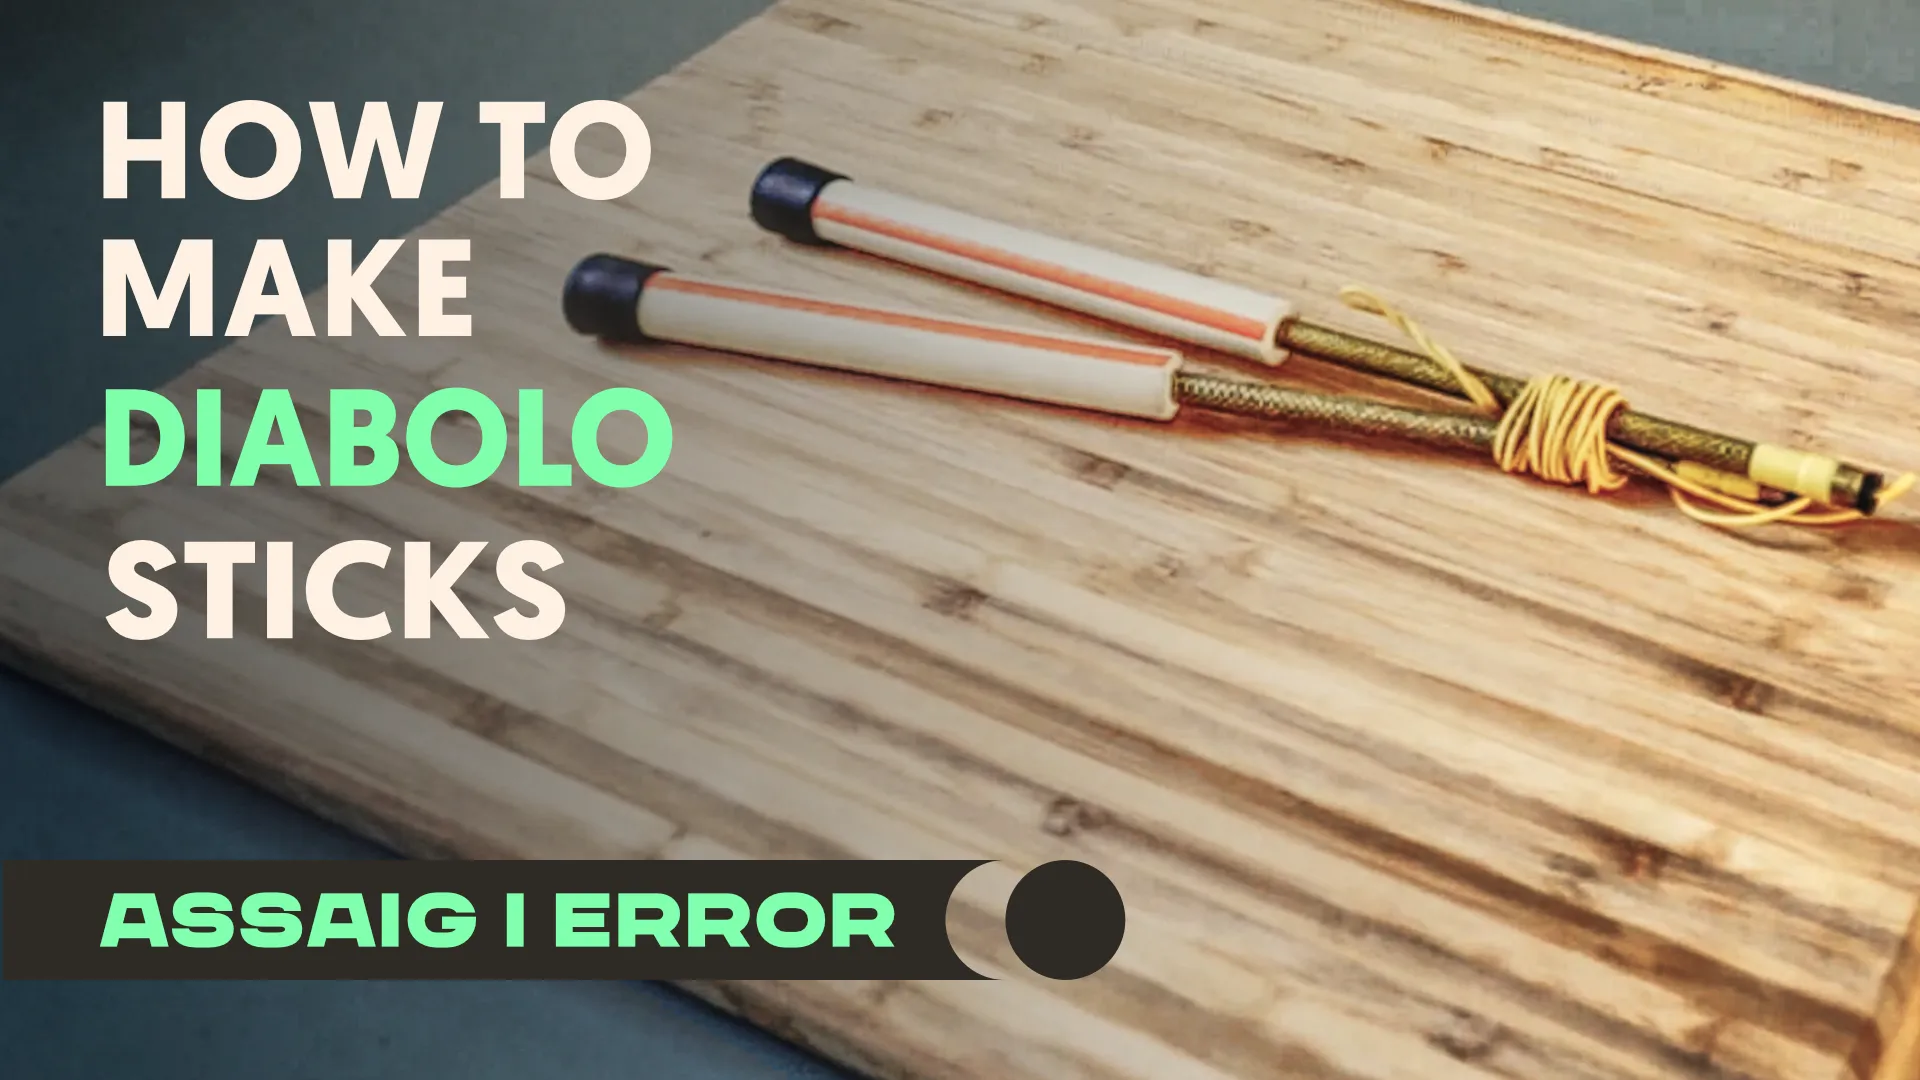 How to make diabolo sticks